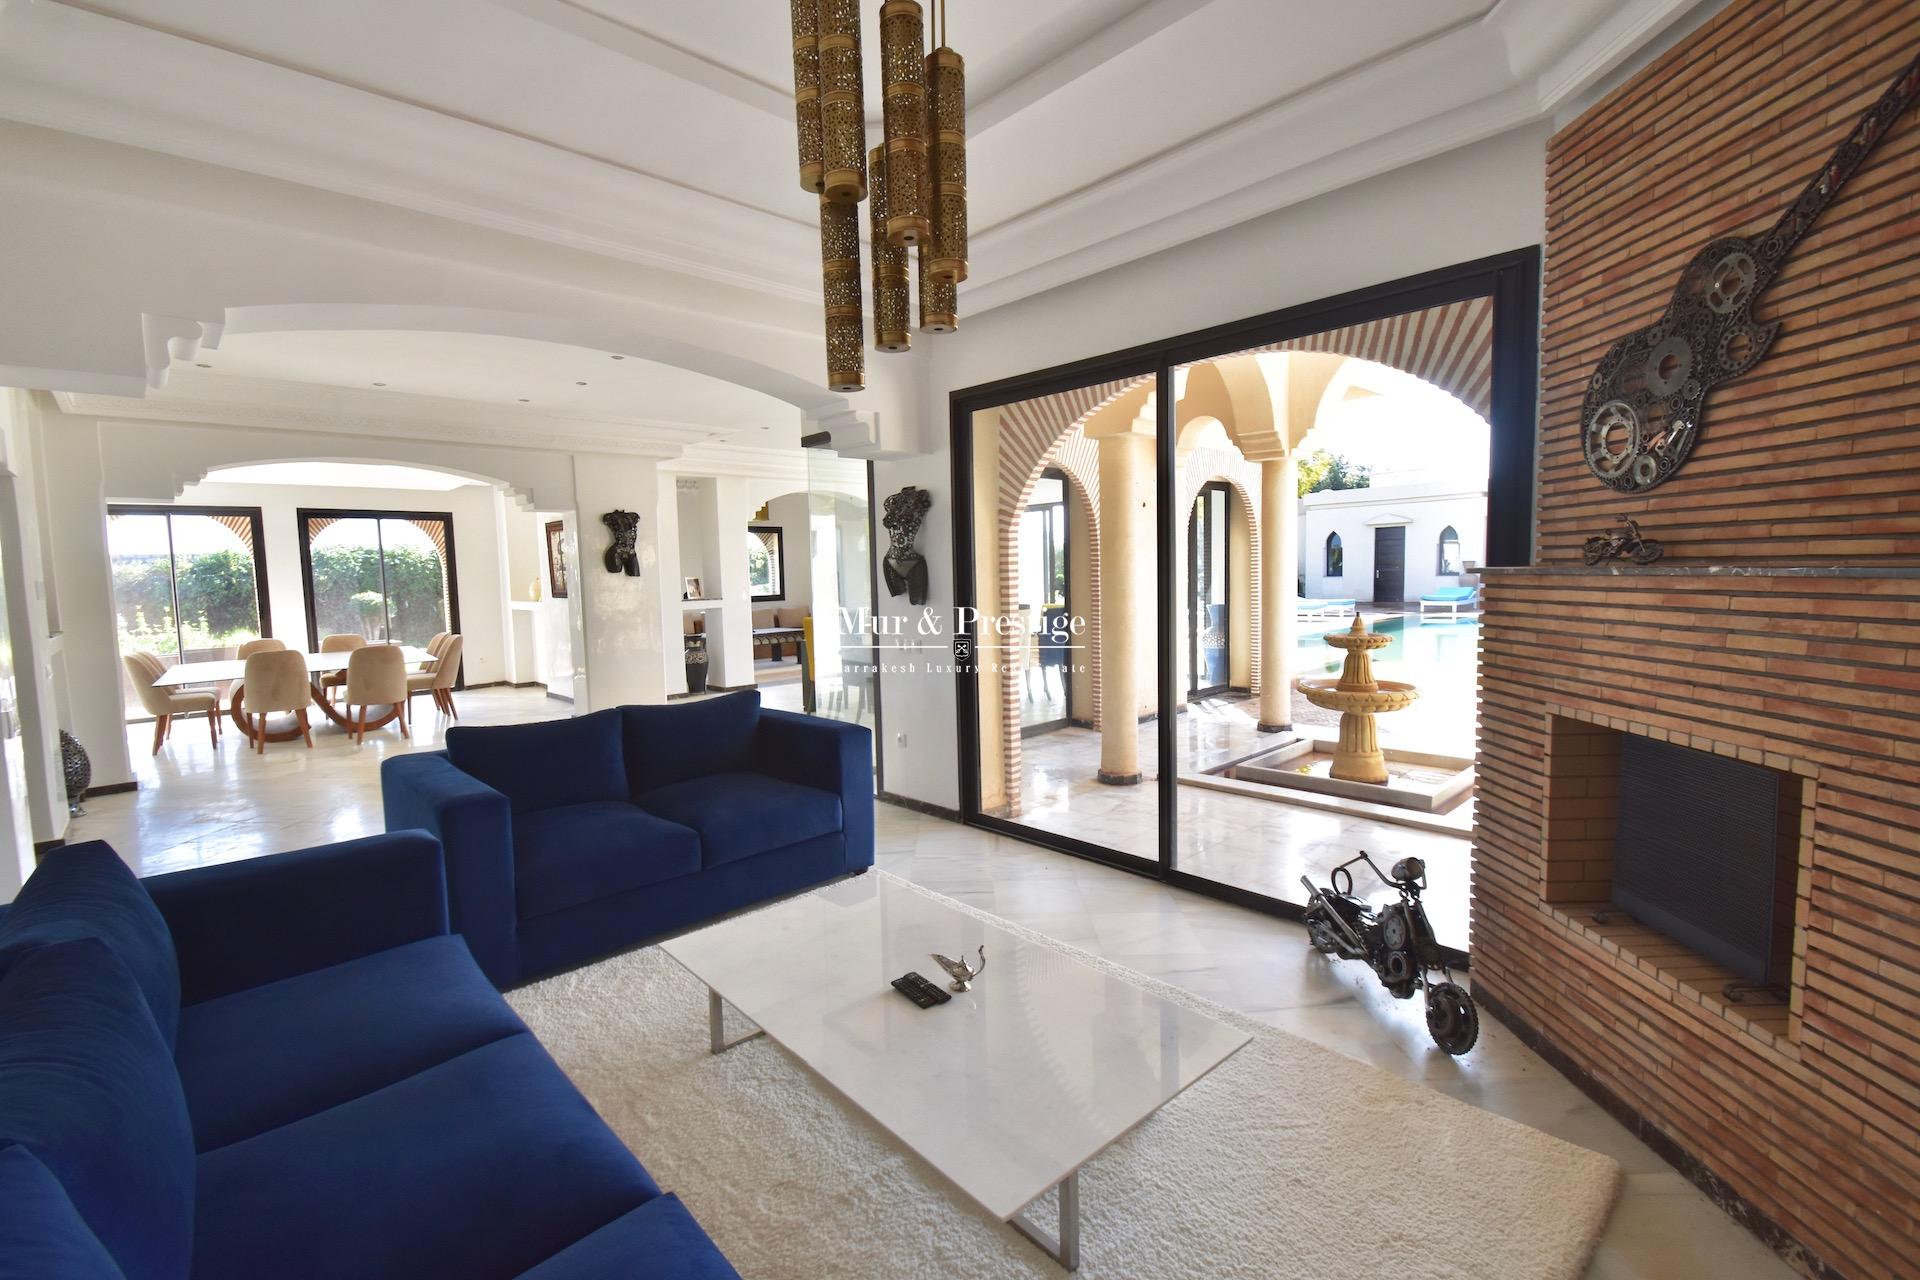 Maison moderne à vendre proche du Golf Royal de Marrakech